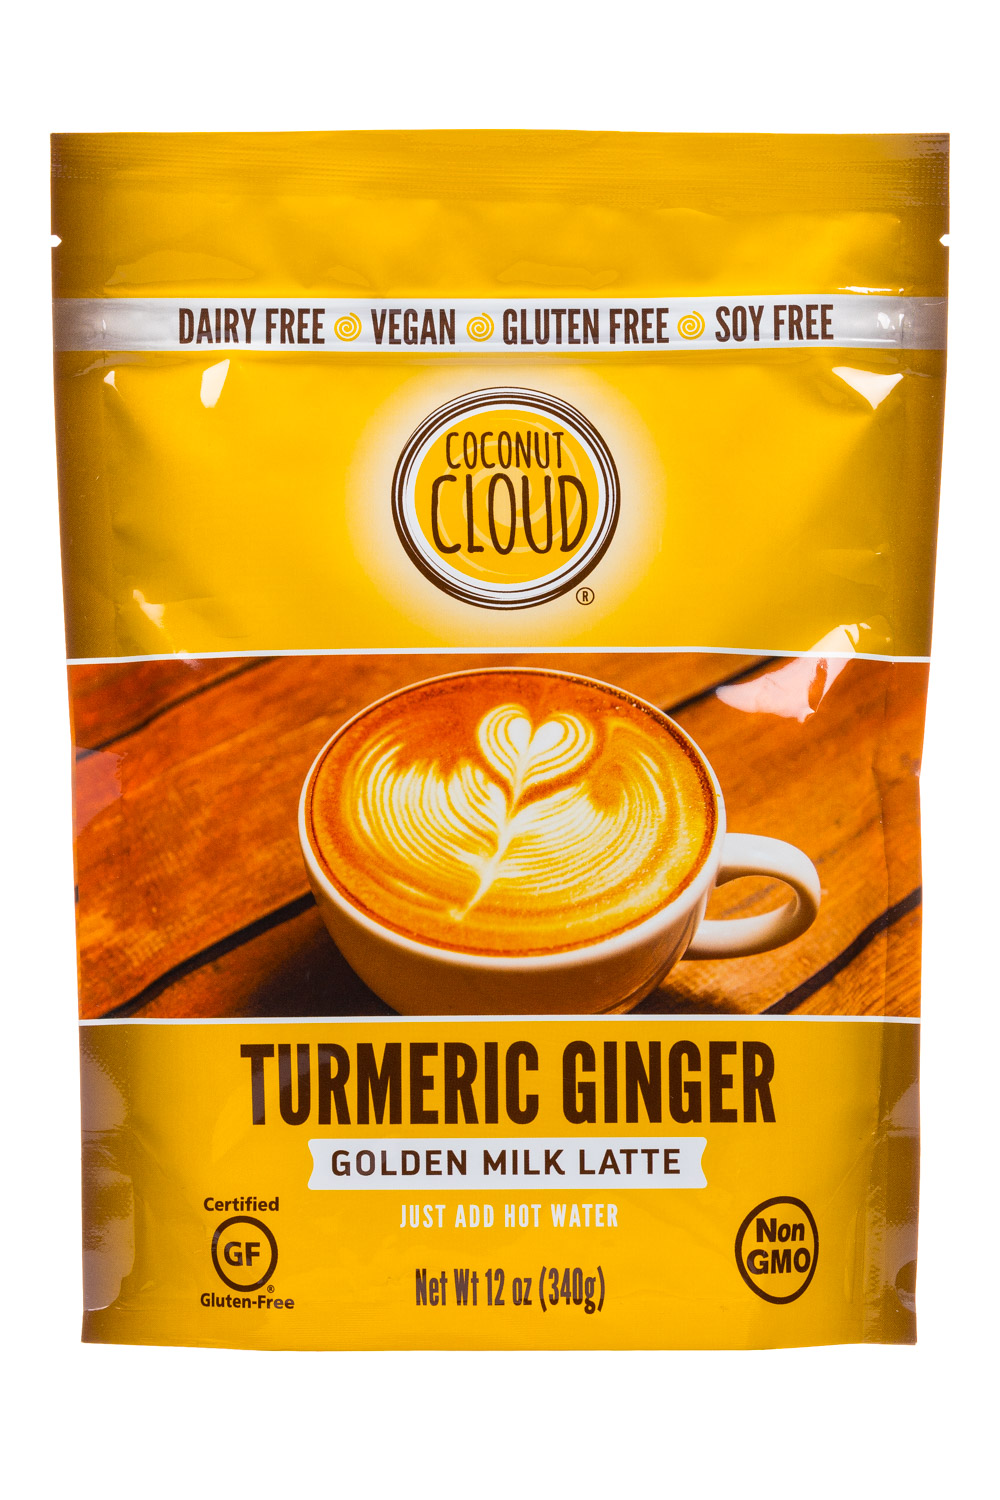 Turmeric Ginger - Golden Milk Latte (2018)